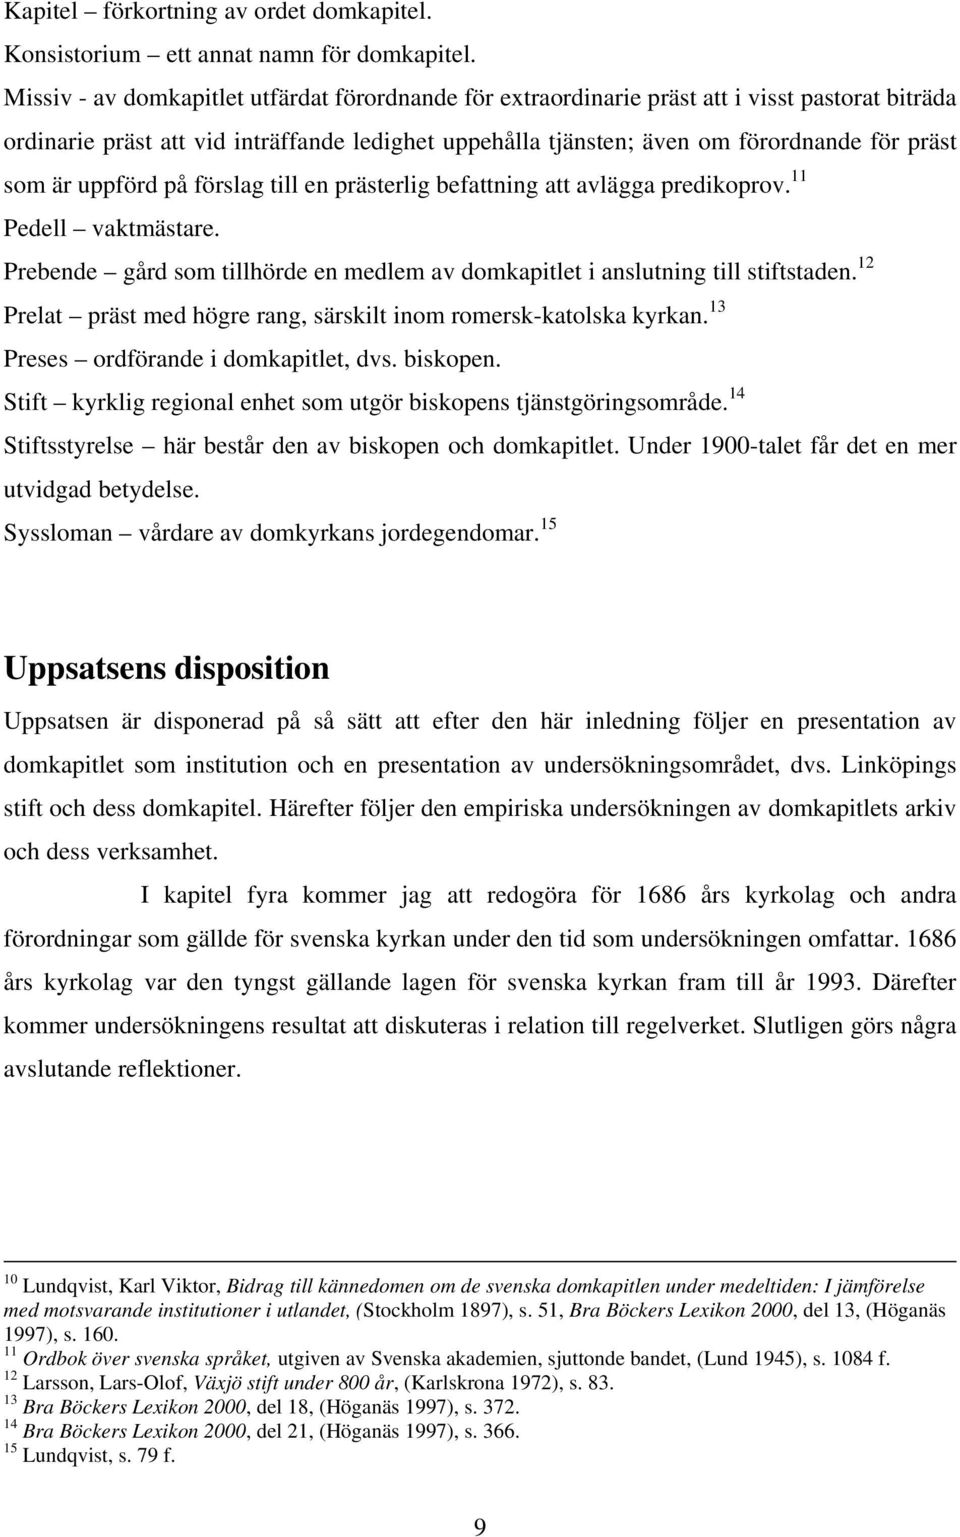 Linköpings domkapitels arkiv som källa till dess verksamhet - PDF ...